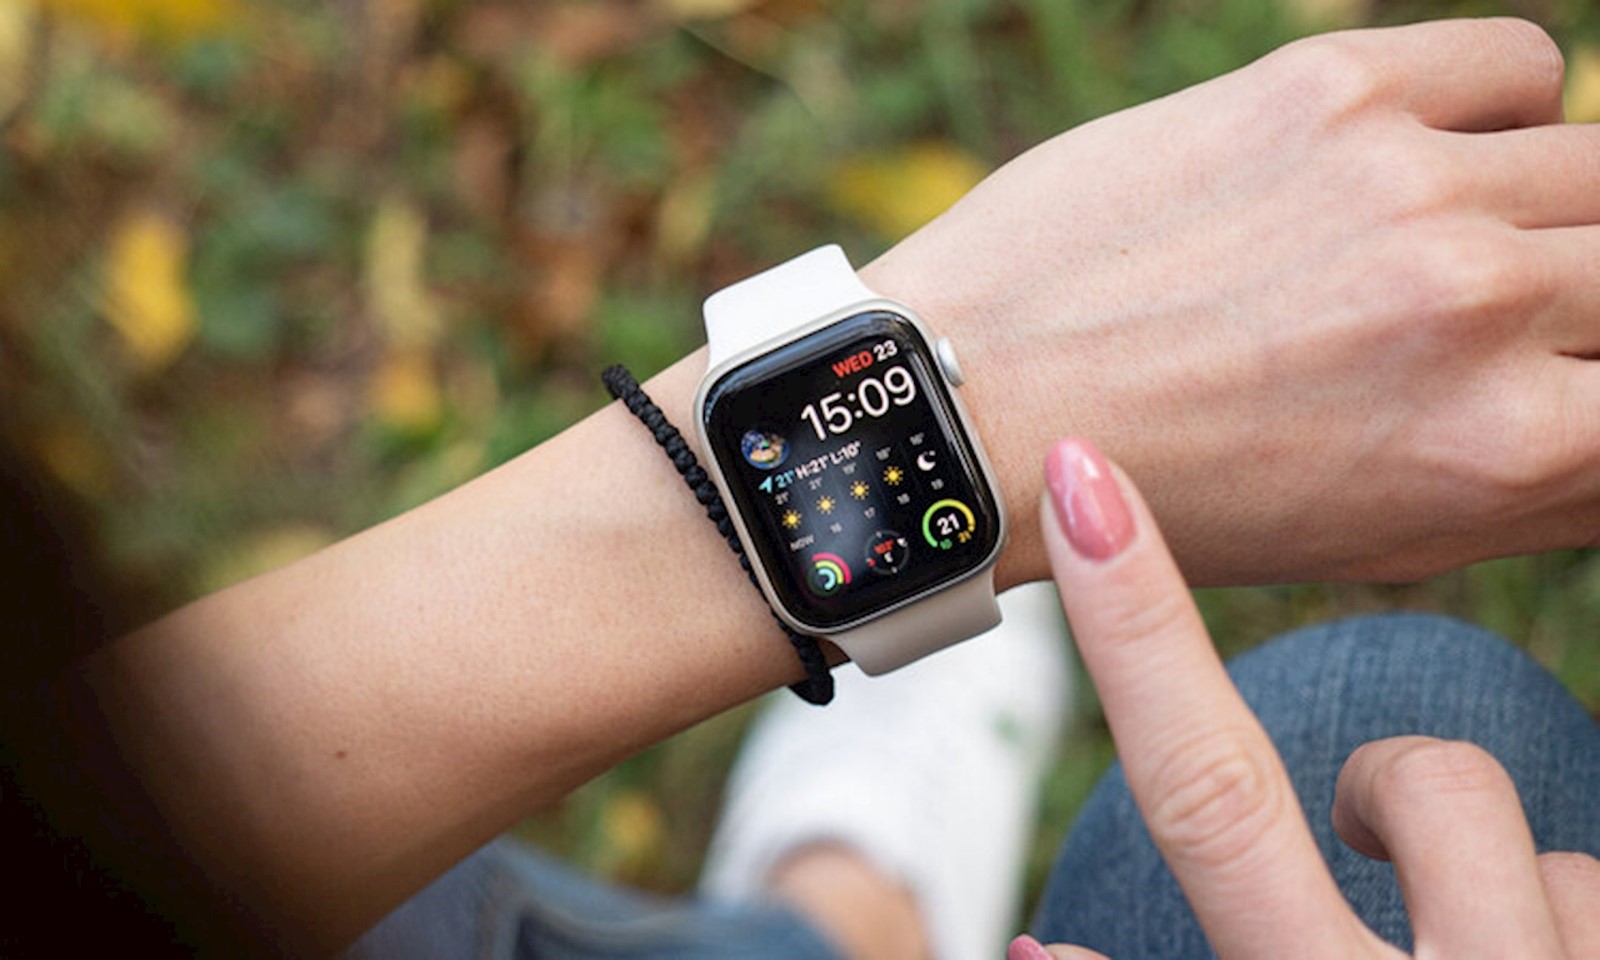 Apple Watch Series 6 Gps, 44Mm Aluminum Case With Sport Band - Chính Hãng  (Vn/A)